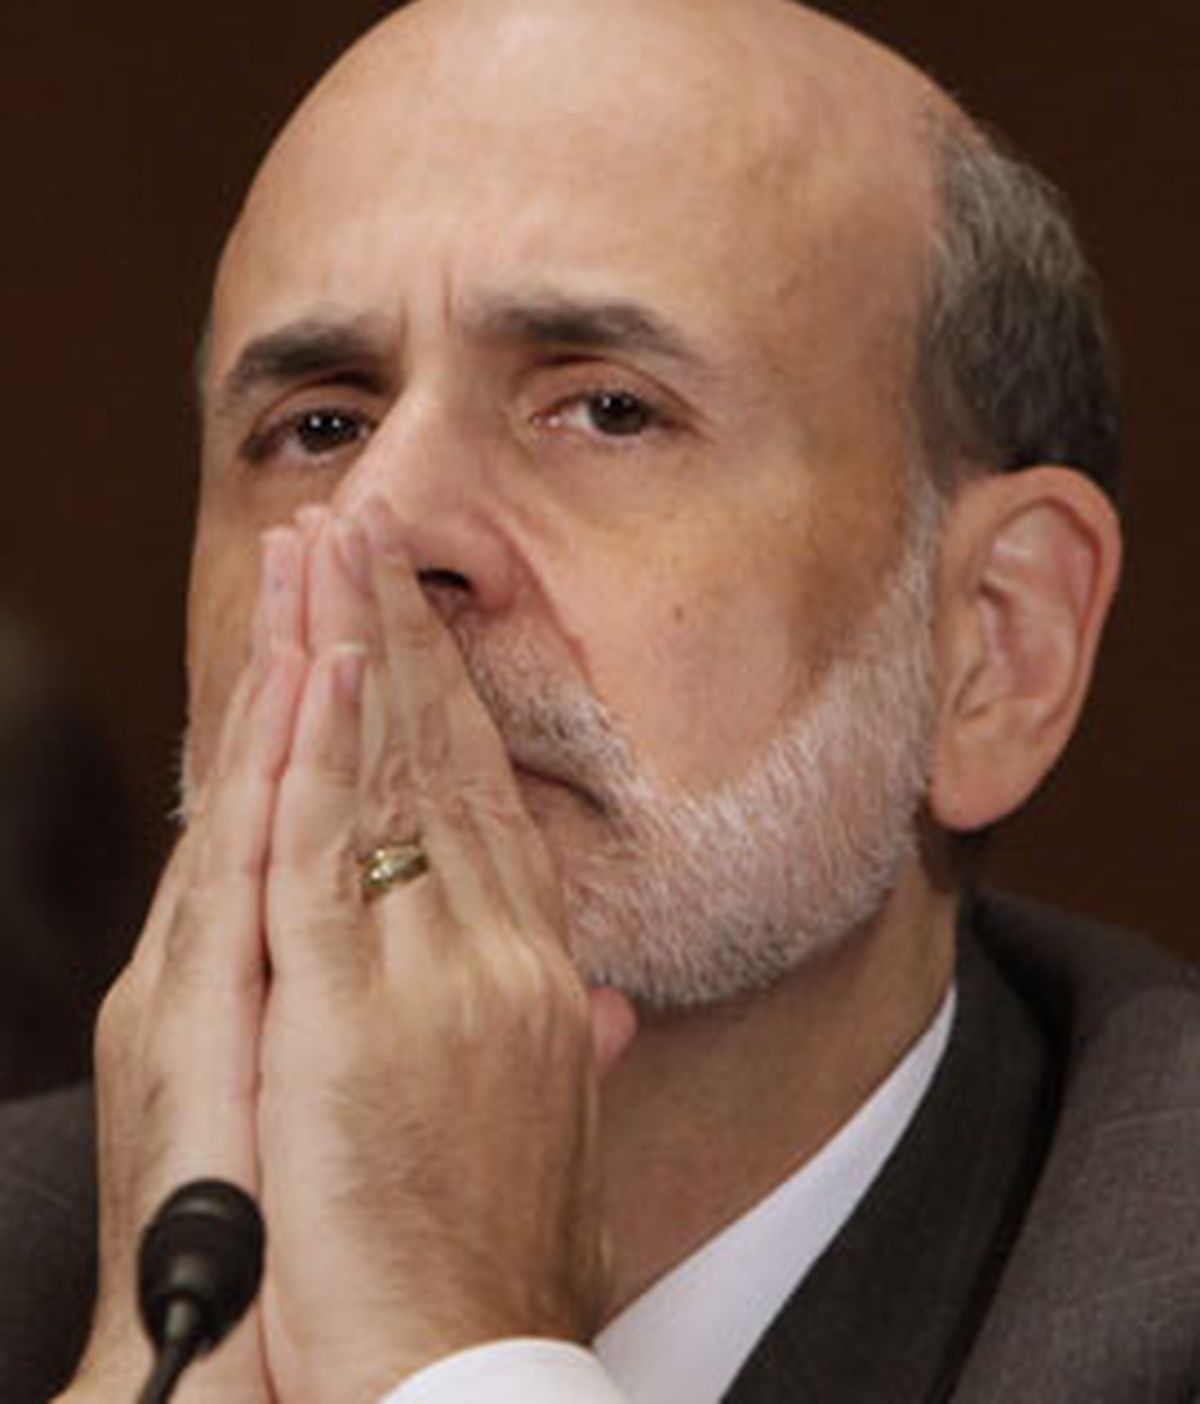 La Fed, presidida por Ben Bernanke, comunica que mantendrá los tipos en niveles "excepcionalmente bajos". Foto: Reuters.